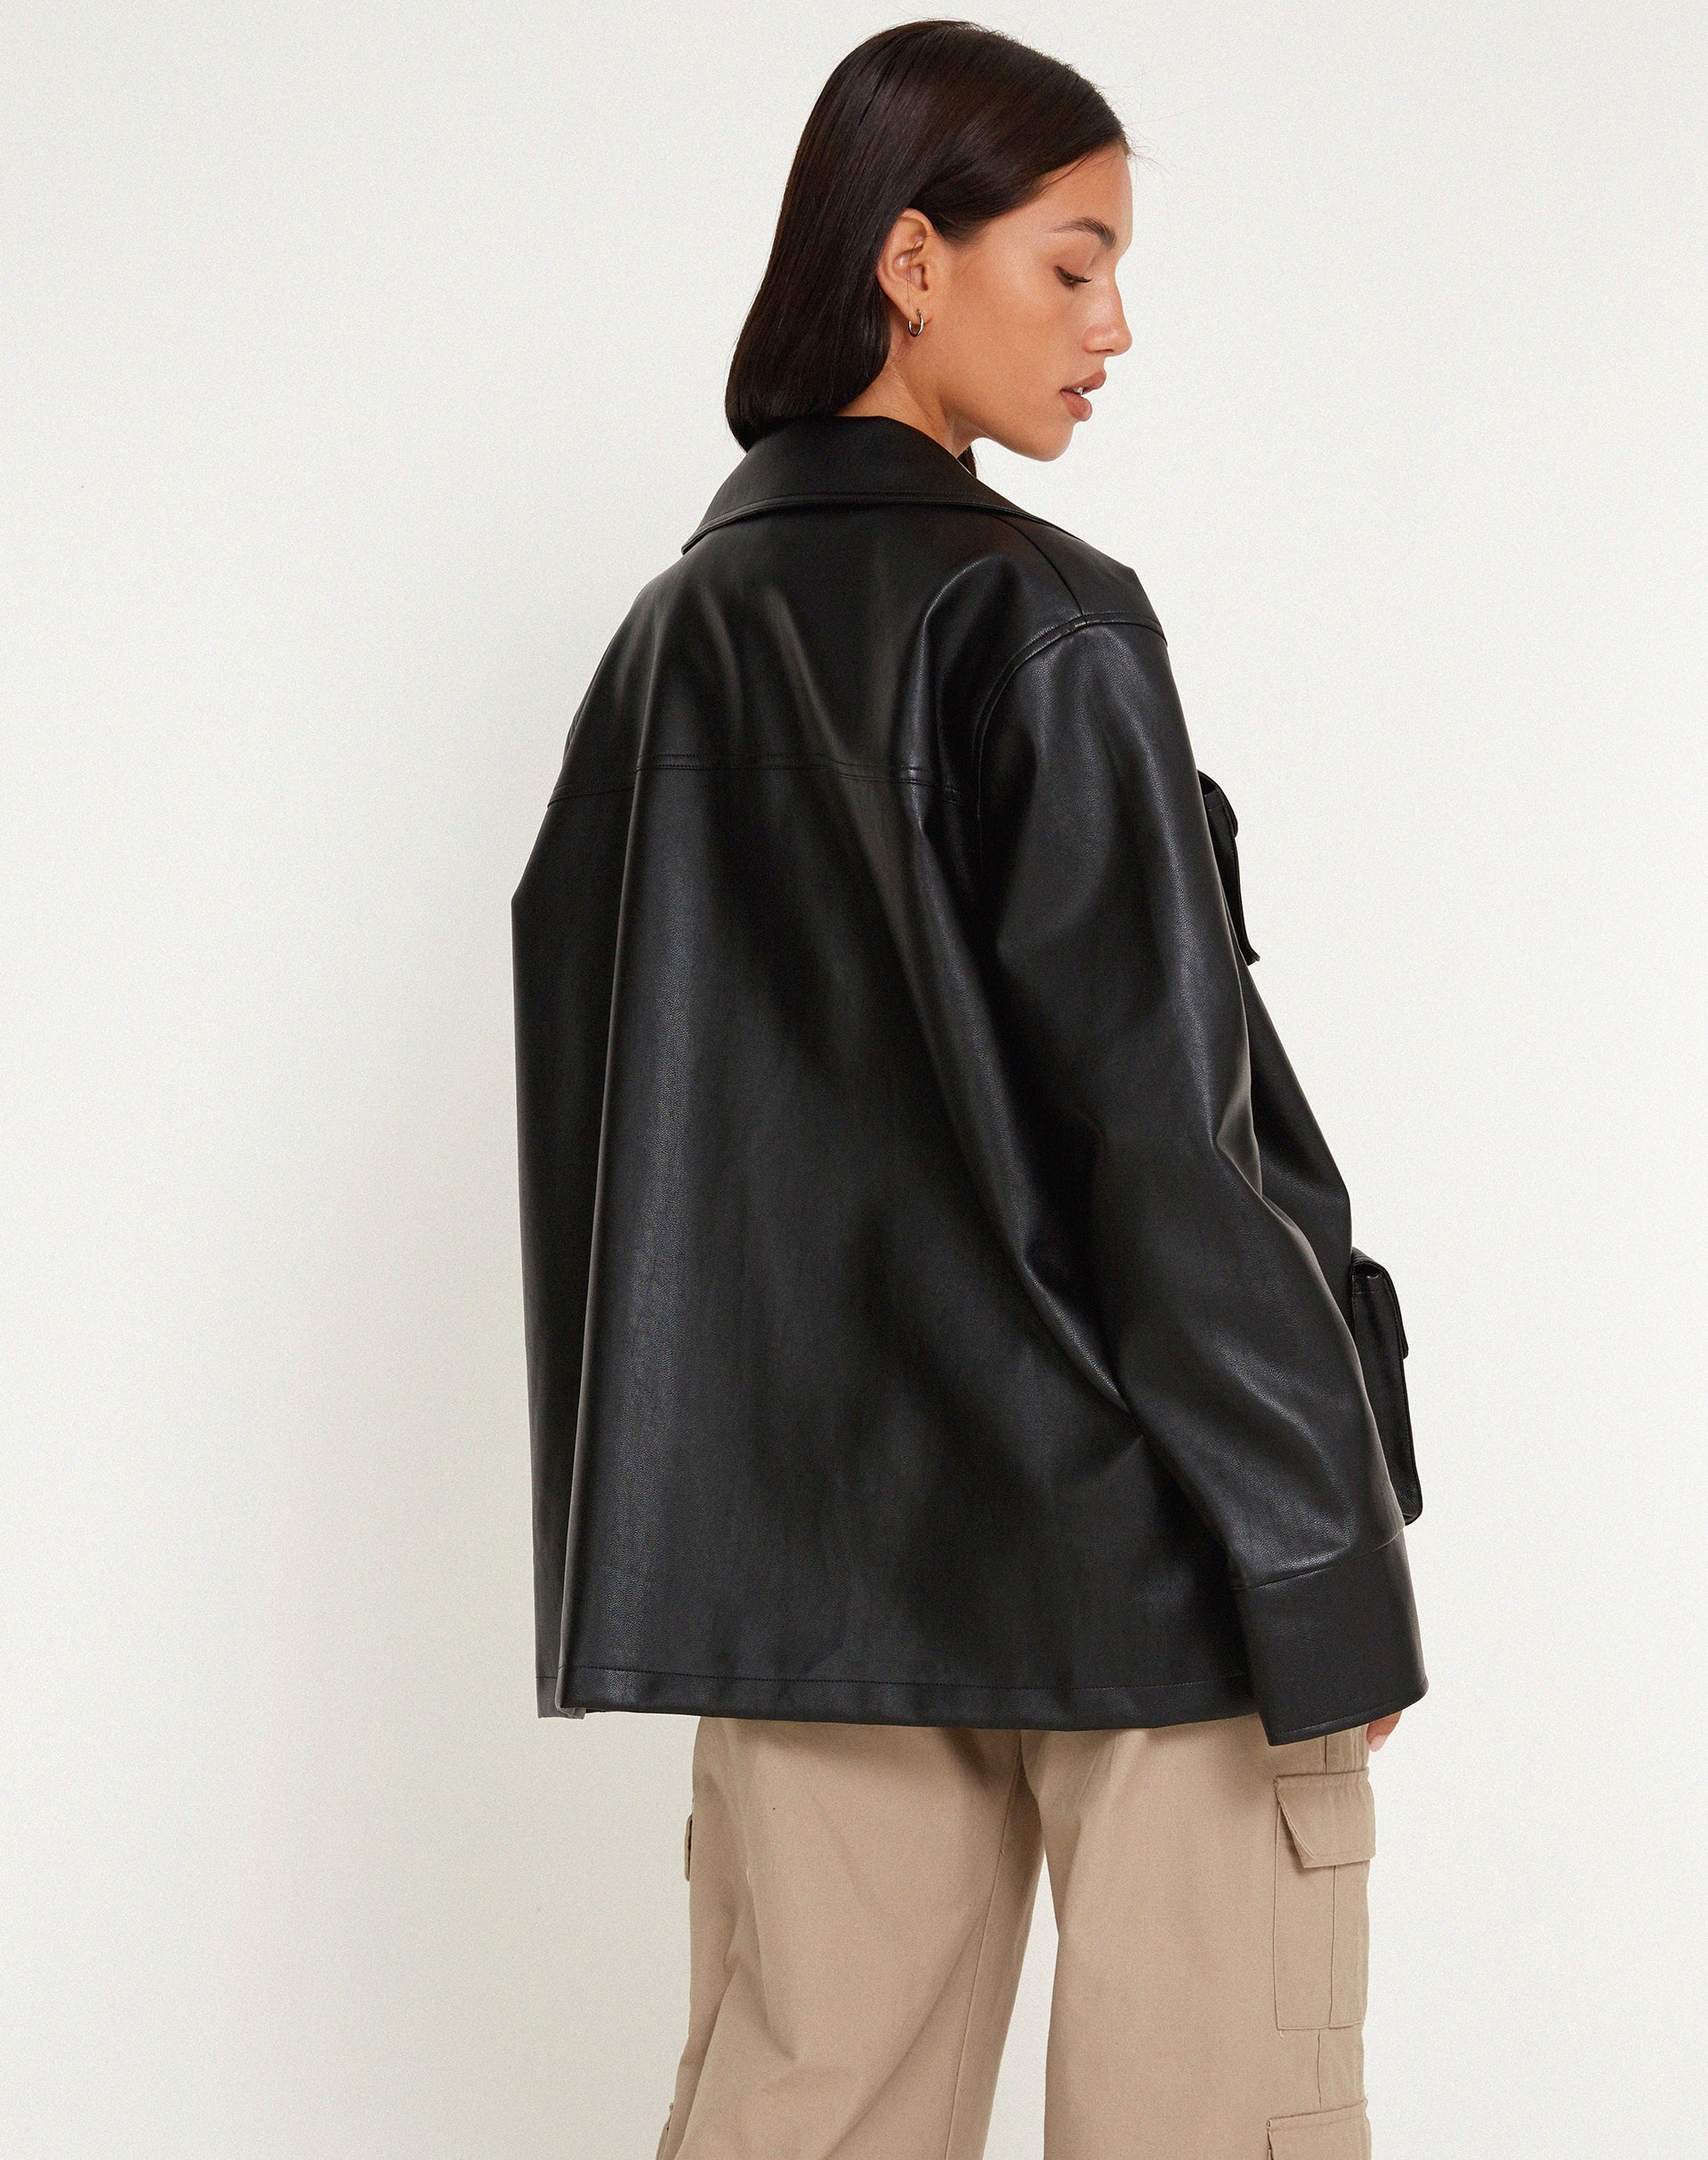 Imagen de la chaqueta Tavira en PU negro